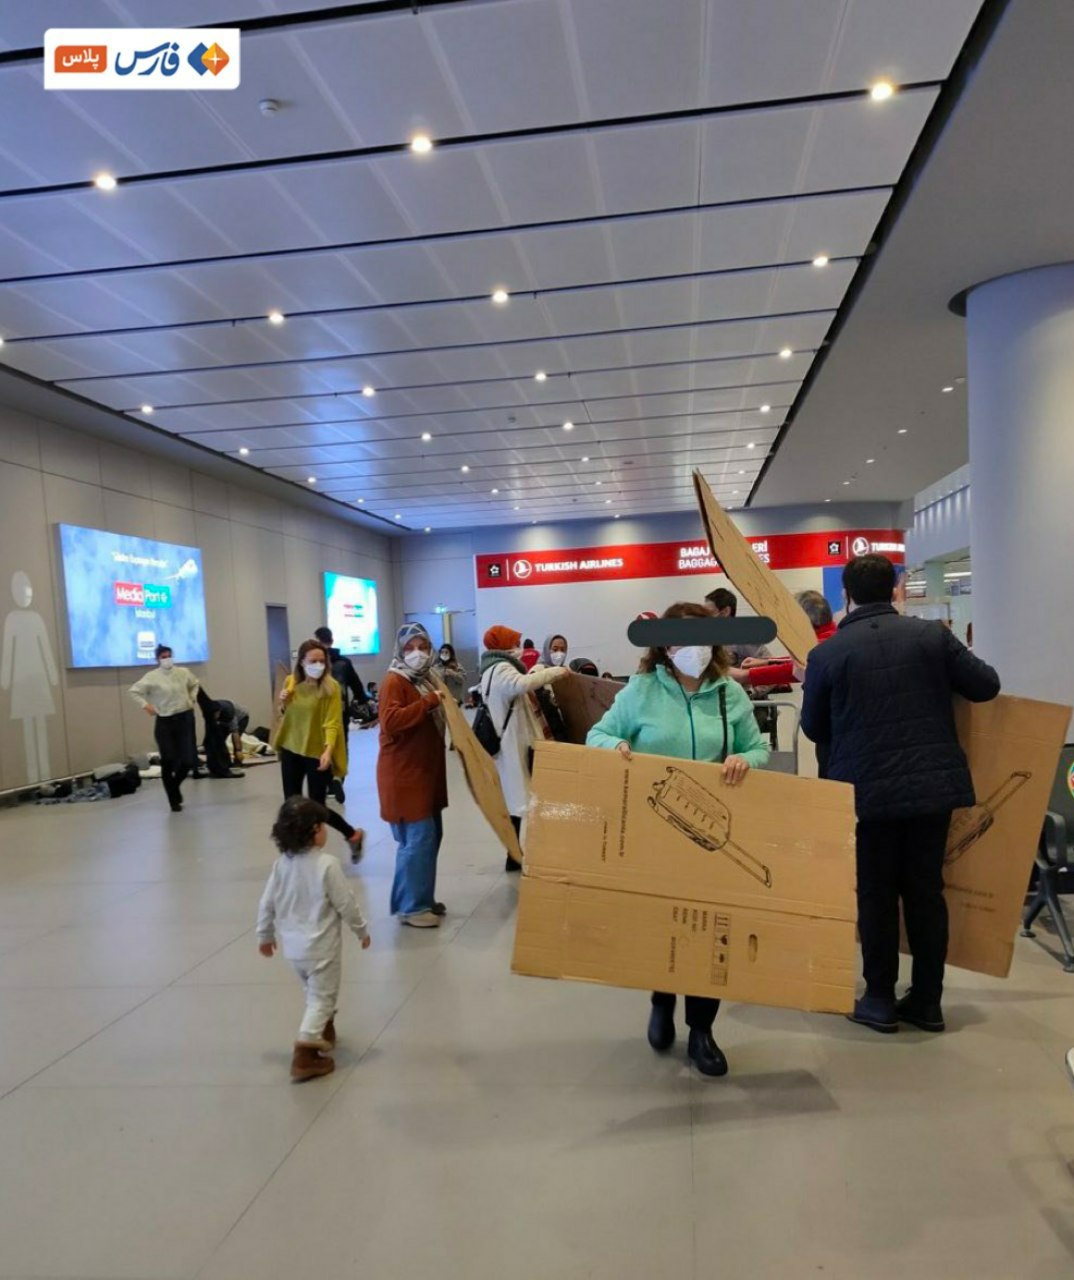 پذیرایی با کارتن از مسافران در فرودگاه ترکیه + عکس